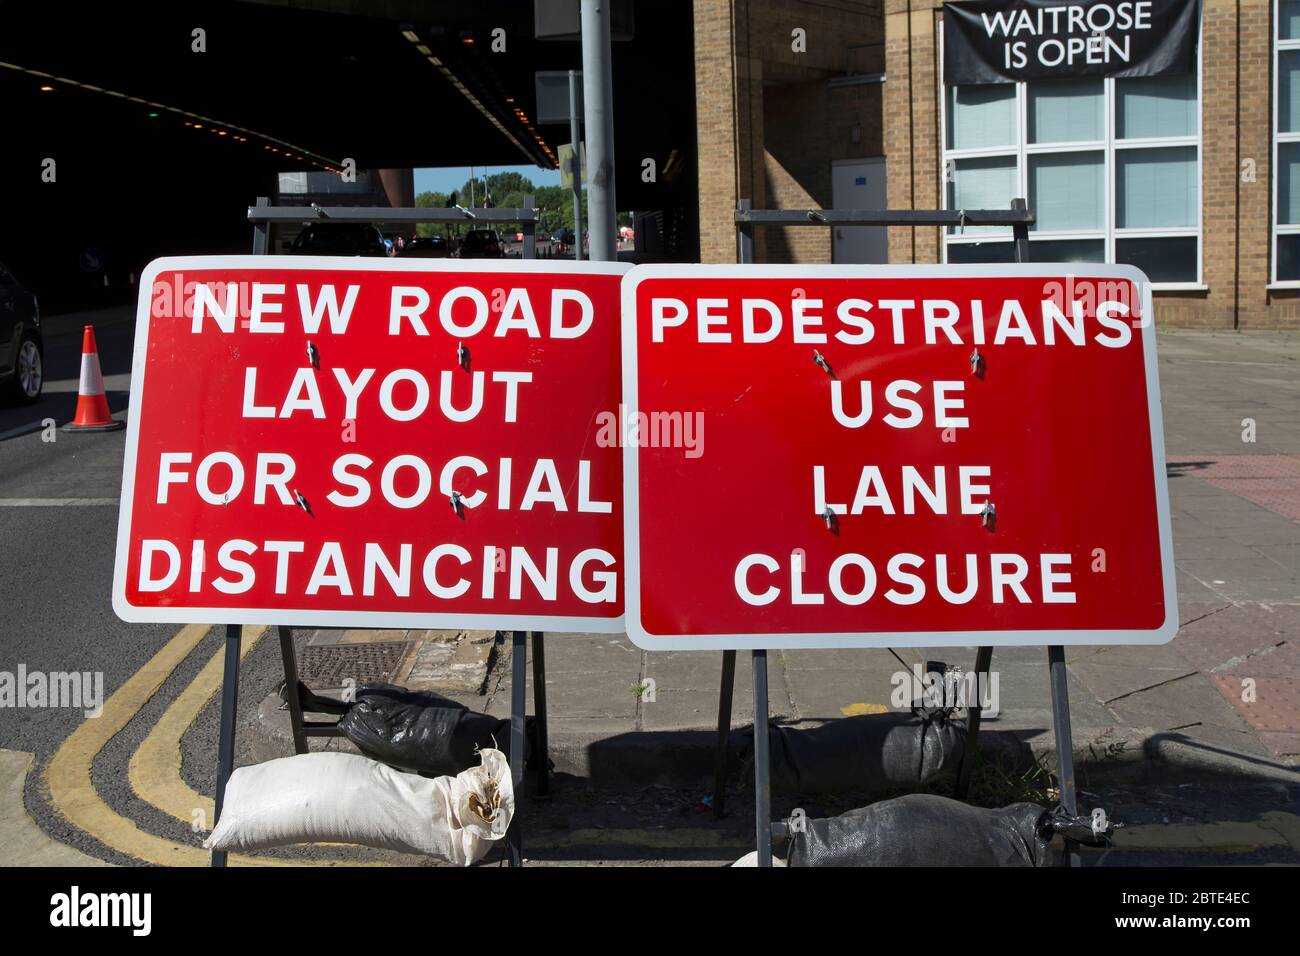 Neue Straßenlage für soziale Distanzierung und Fußgänger verwenden Fahrbahnabsperrung in kingstong, surrey, england, aufgrund von Covid 19 Virus Richtlinien Stockfoto